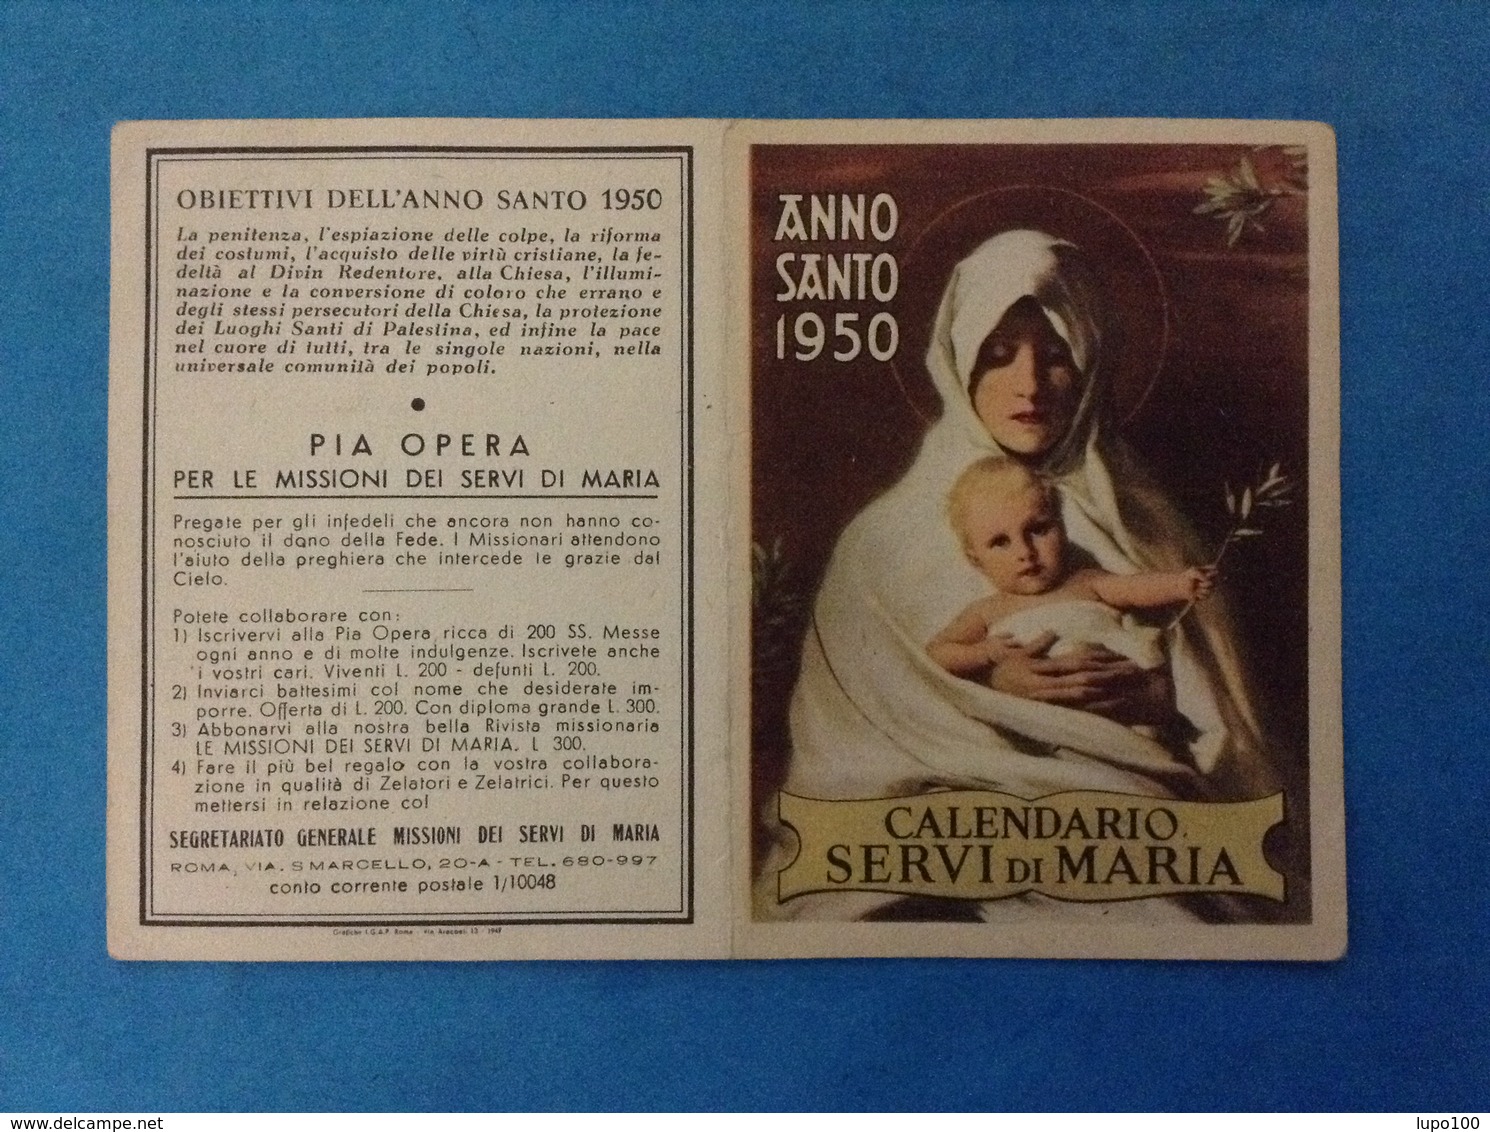 SANTINO CALENDARIETTO HOLY CARD - CALENDARIO SERVI DI MARIA ANNO SANTO 1950 - Formato Piccolo : 1961-70